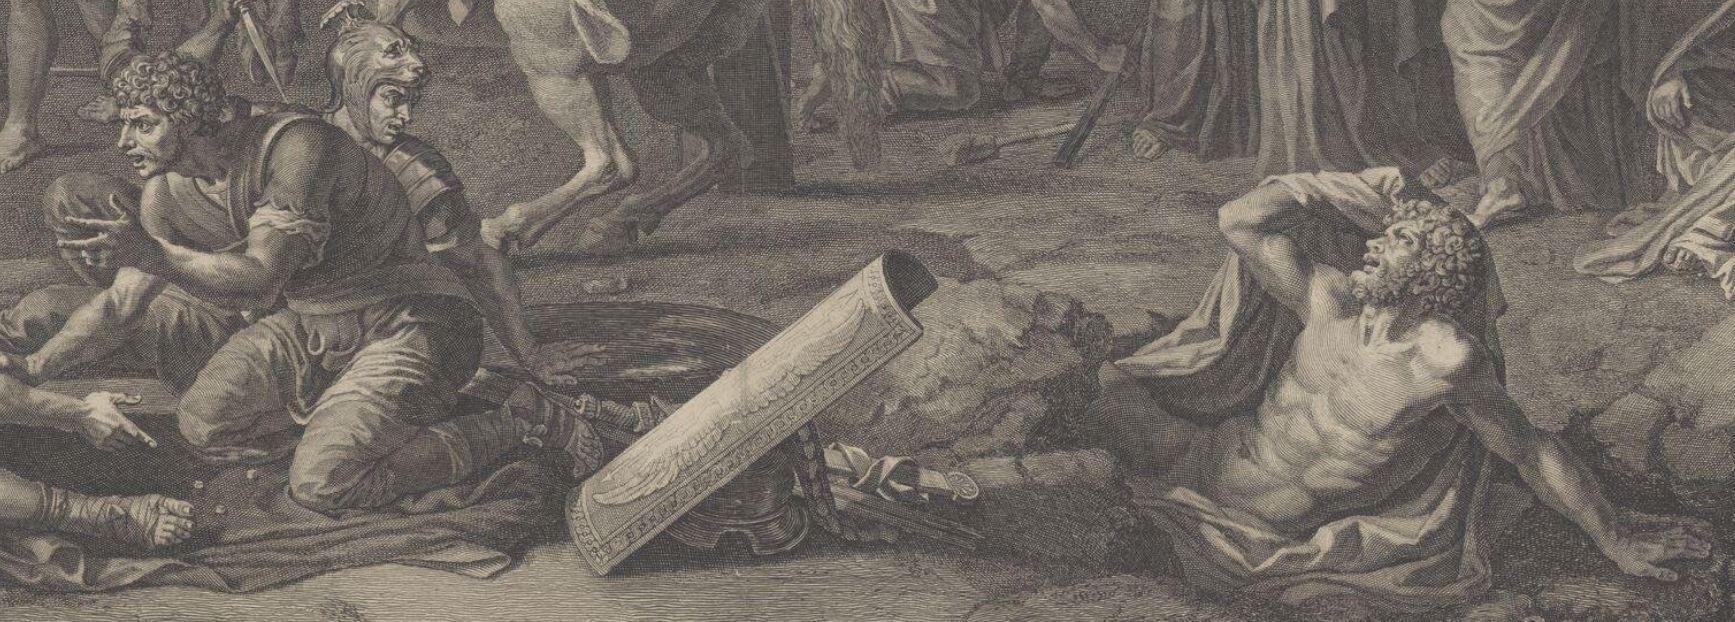 Poussin 1644-46 Crucifixion gravure de Stella detail des mort